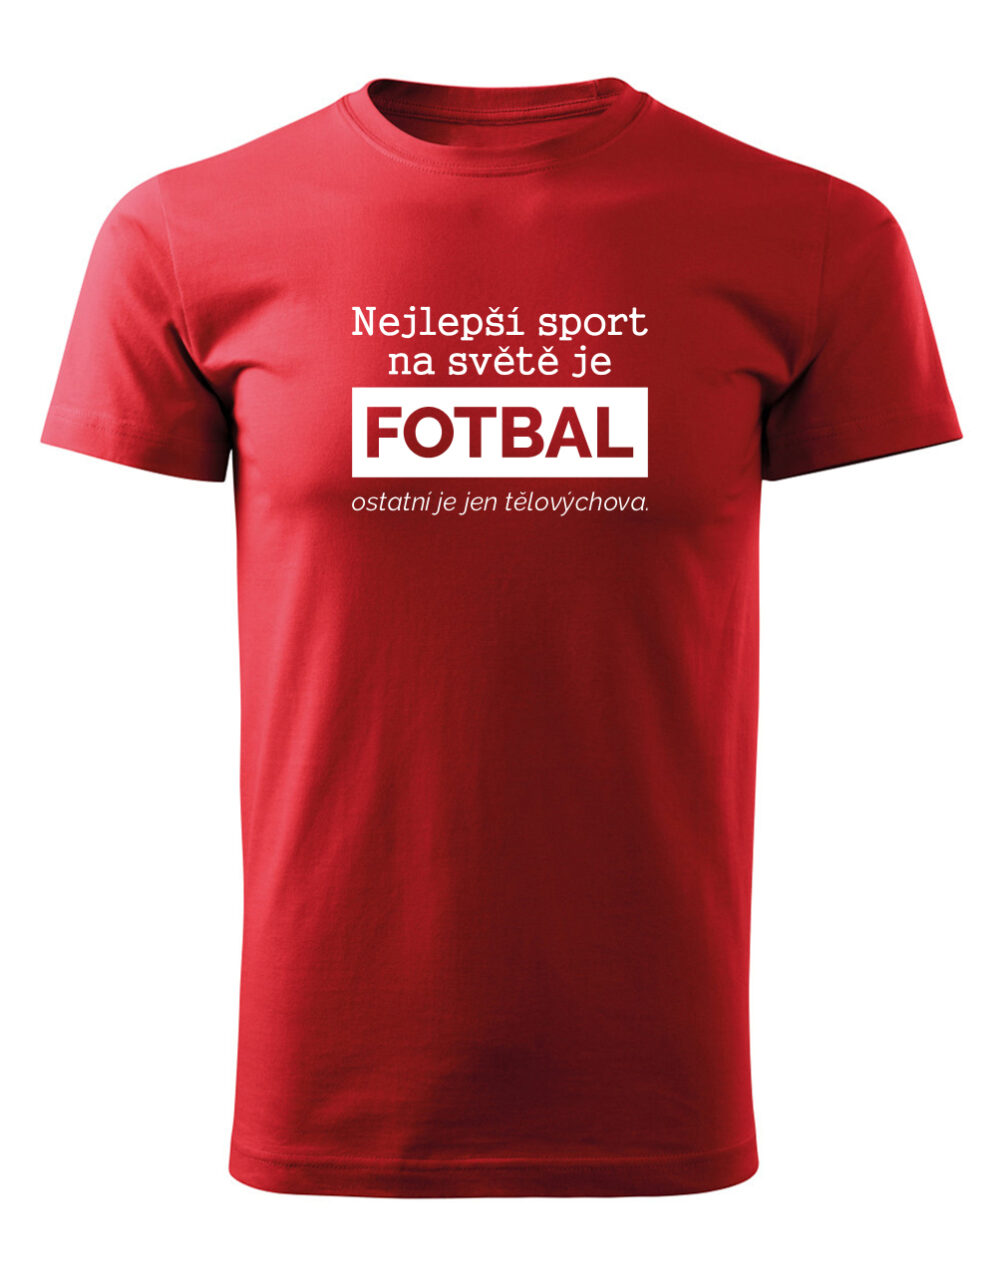 Pánské tričko s potiskem Nejlepší sport je fotbal červená